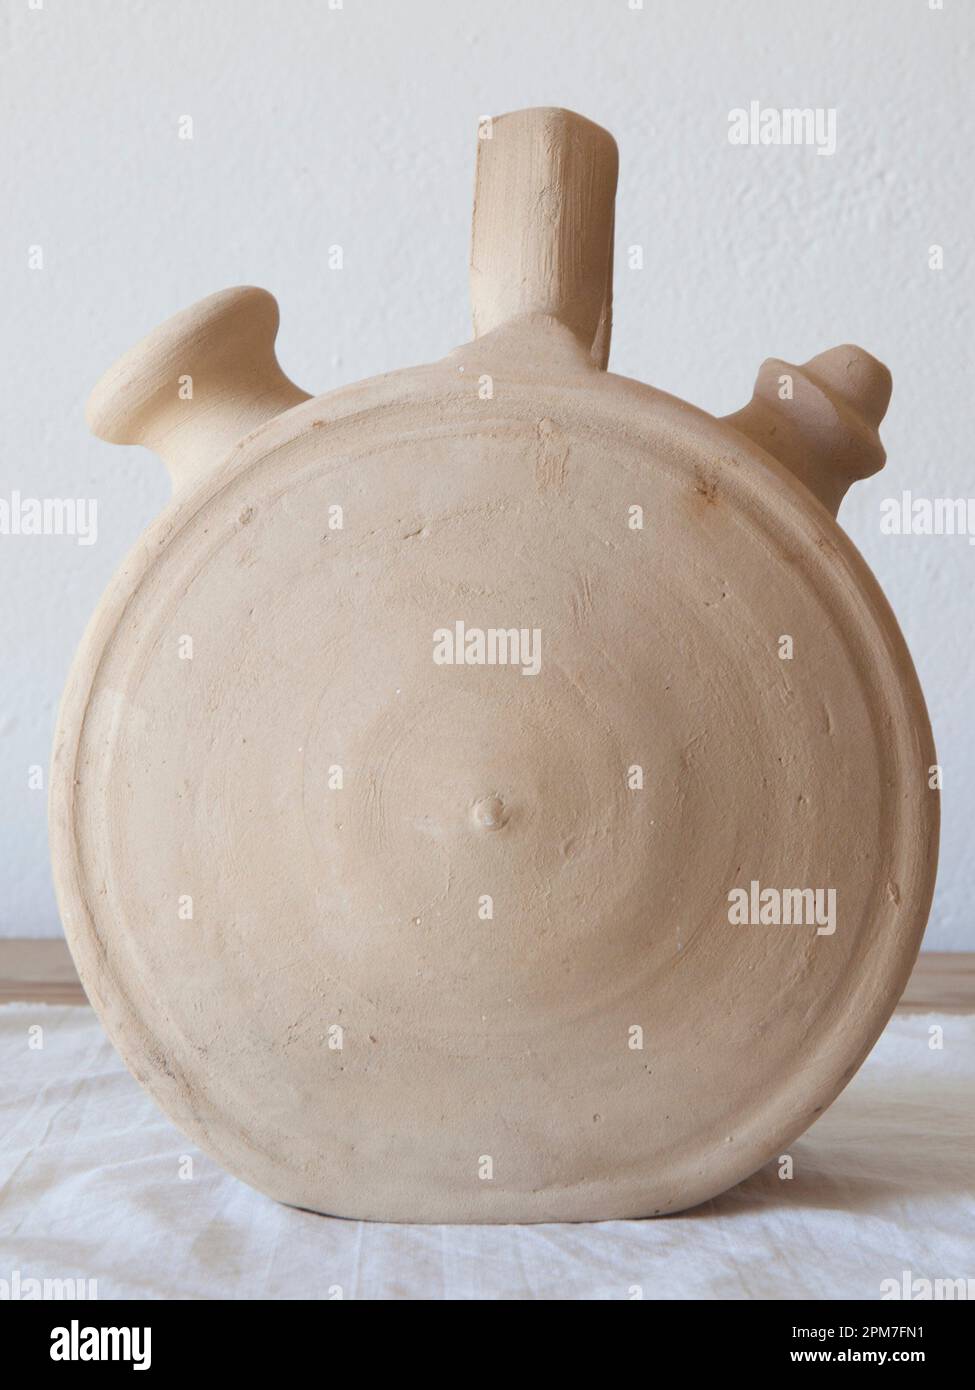 Botijo de barro blanco, jarra tradicional de barro para mantener el agua fresca. Forma circular. Foto de stock